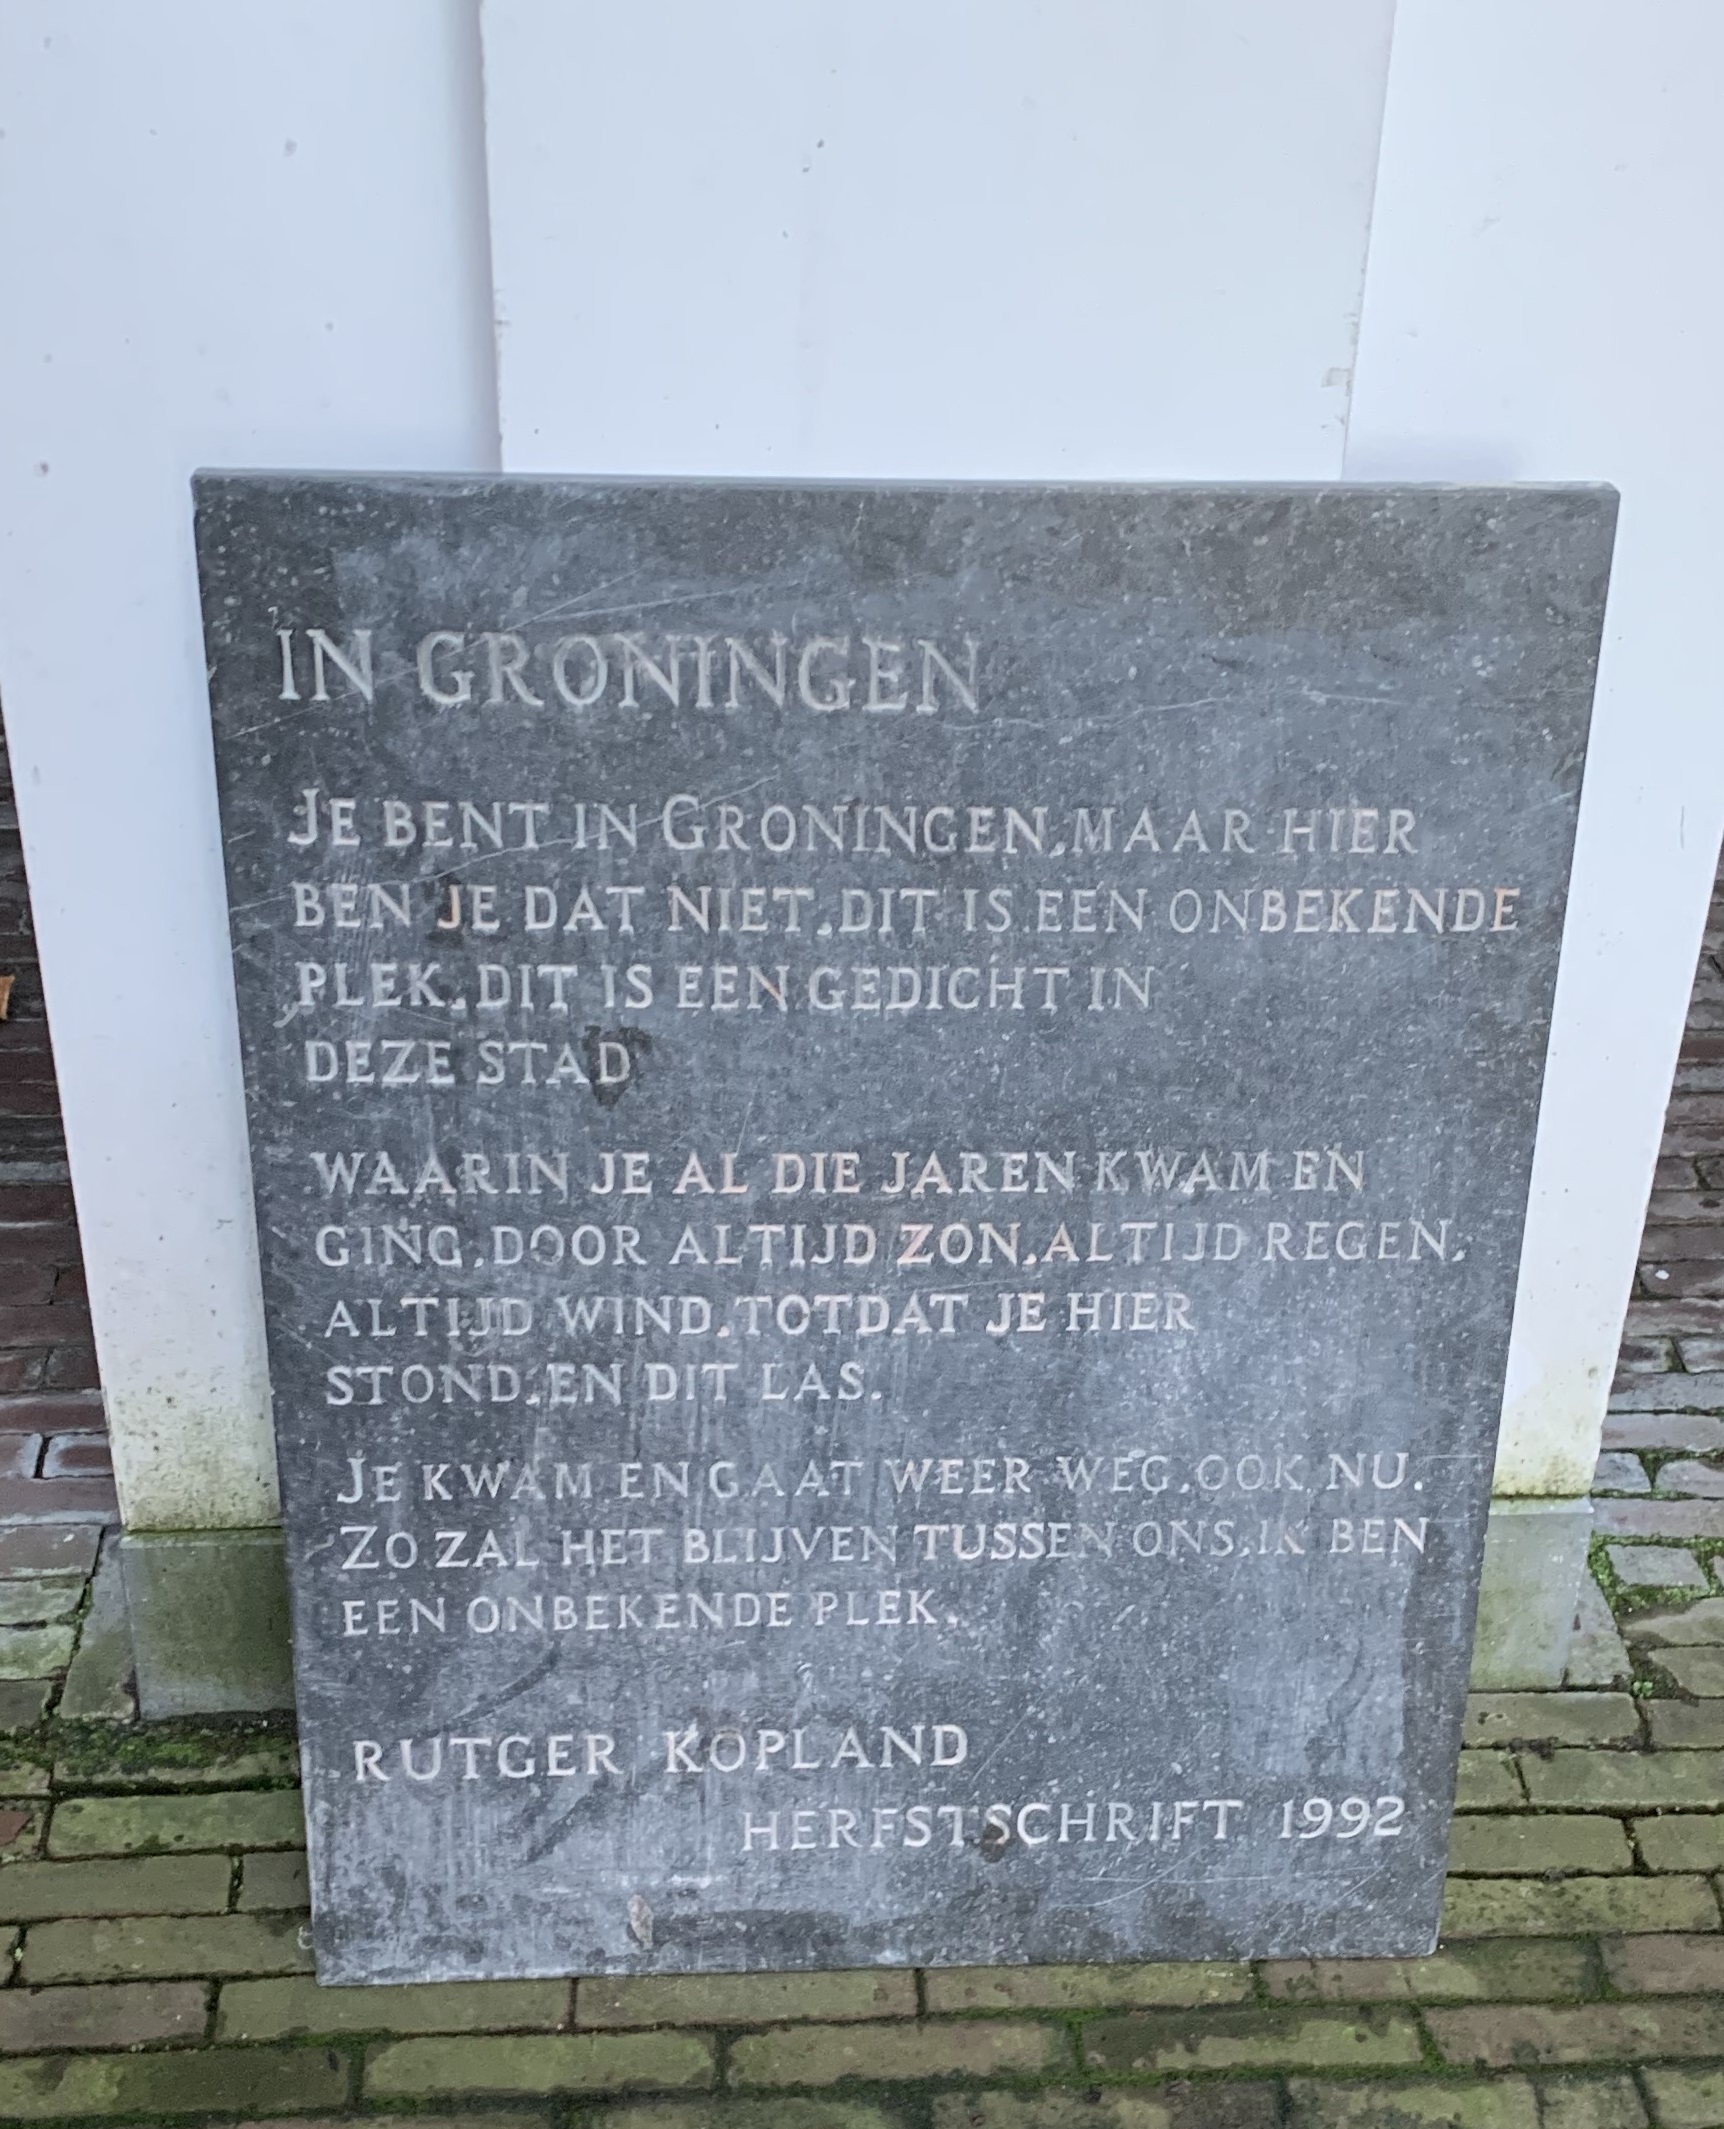 Poem of Rutger Kopland